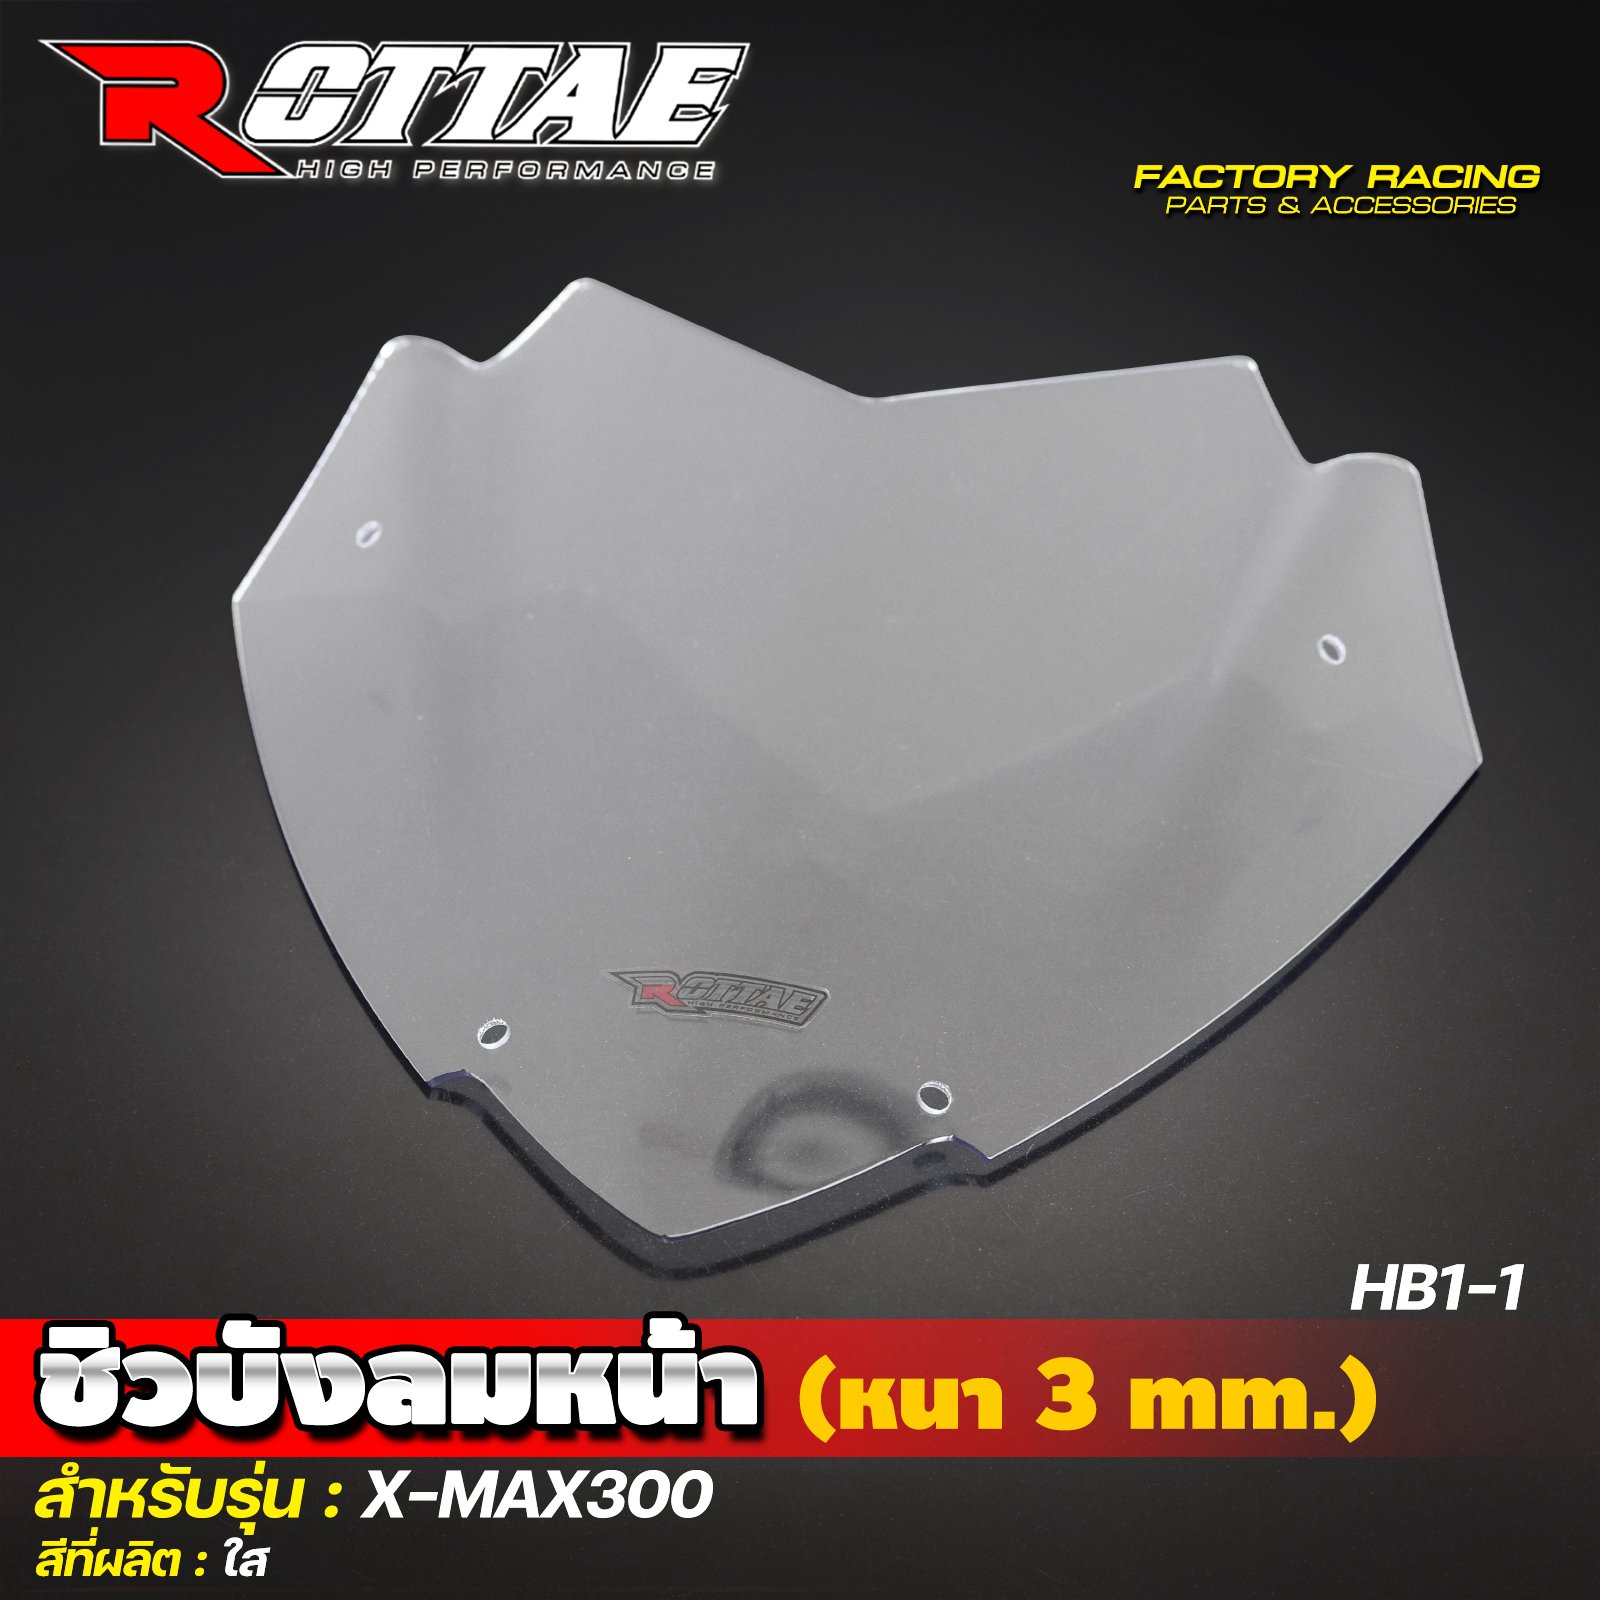 ชิวบังลมหน้า (หนา 3 mm.) HB1-1 สีใส #X-MAX300 ROTTAE